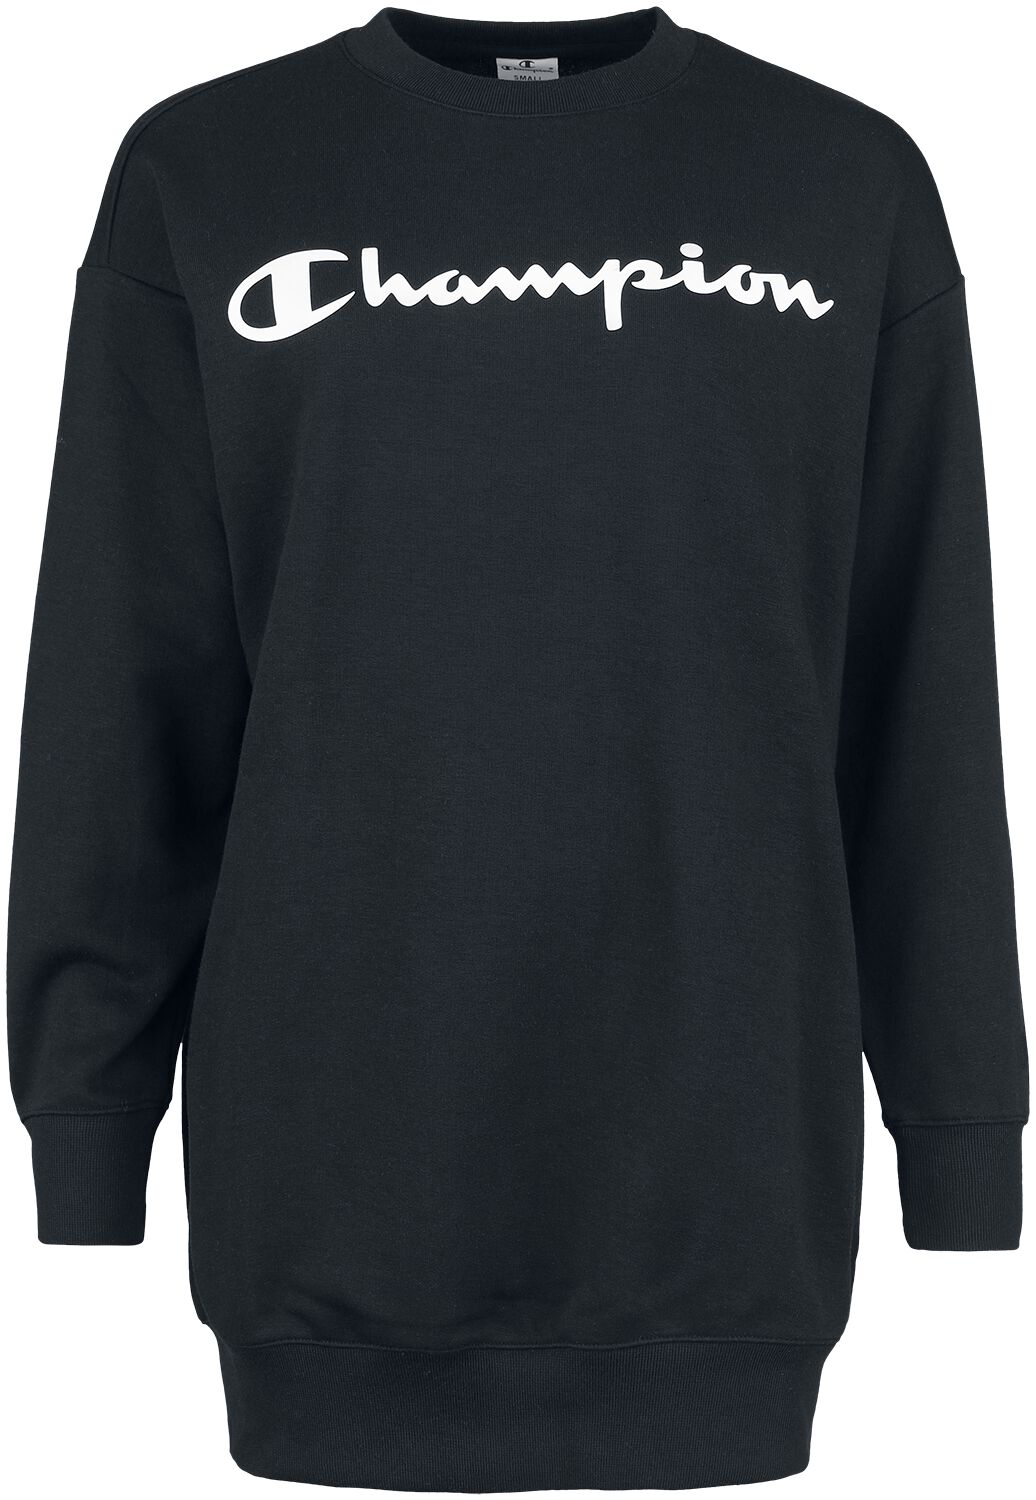 Sweat-shirt de Champion - American Classics - Maxi Sweatshirt - XS à XL - pour Femme - noir